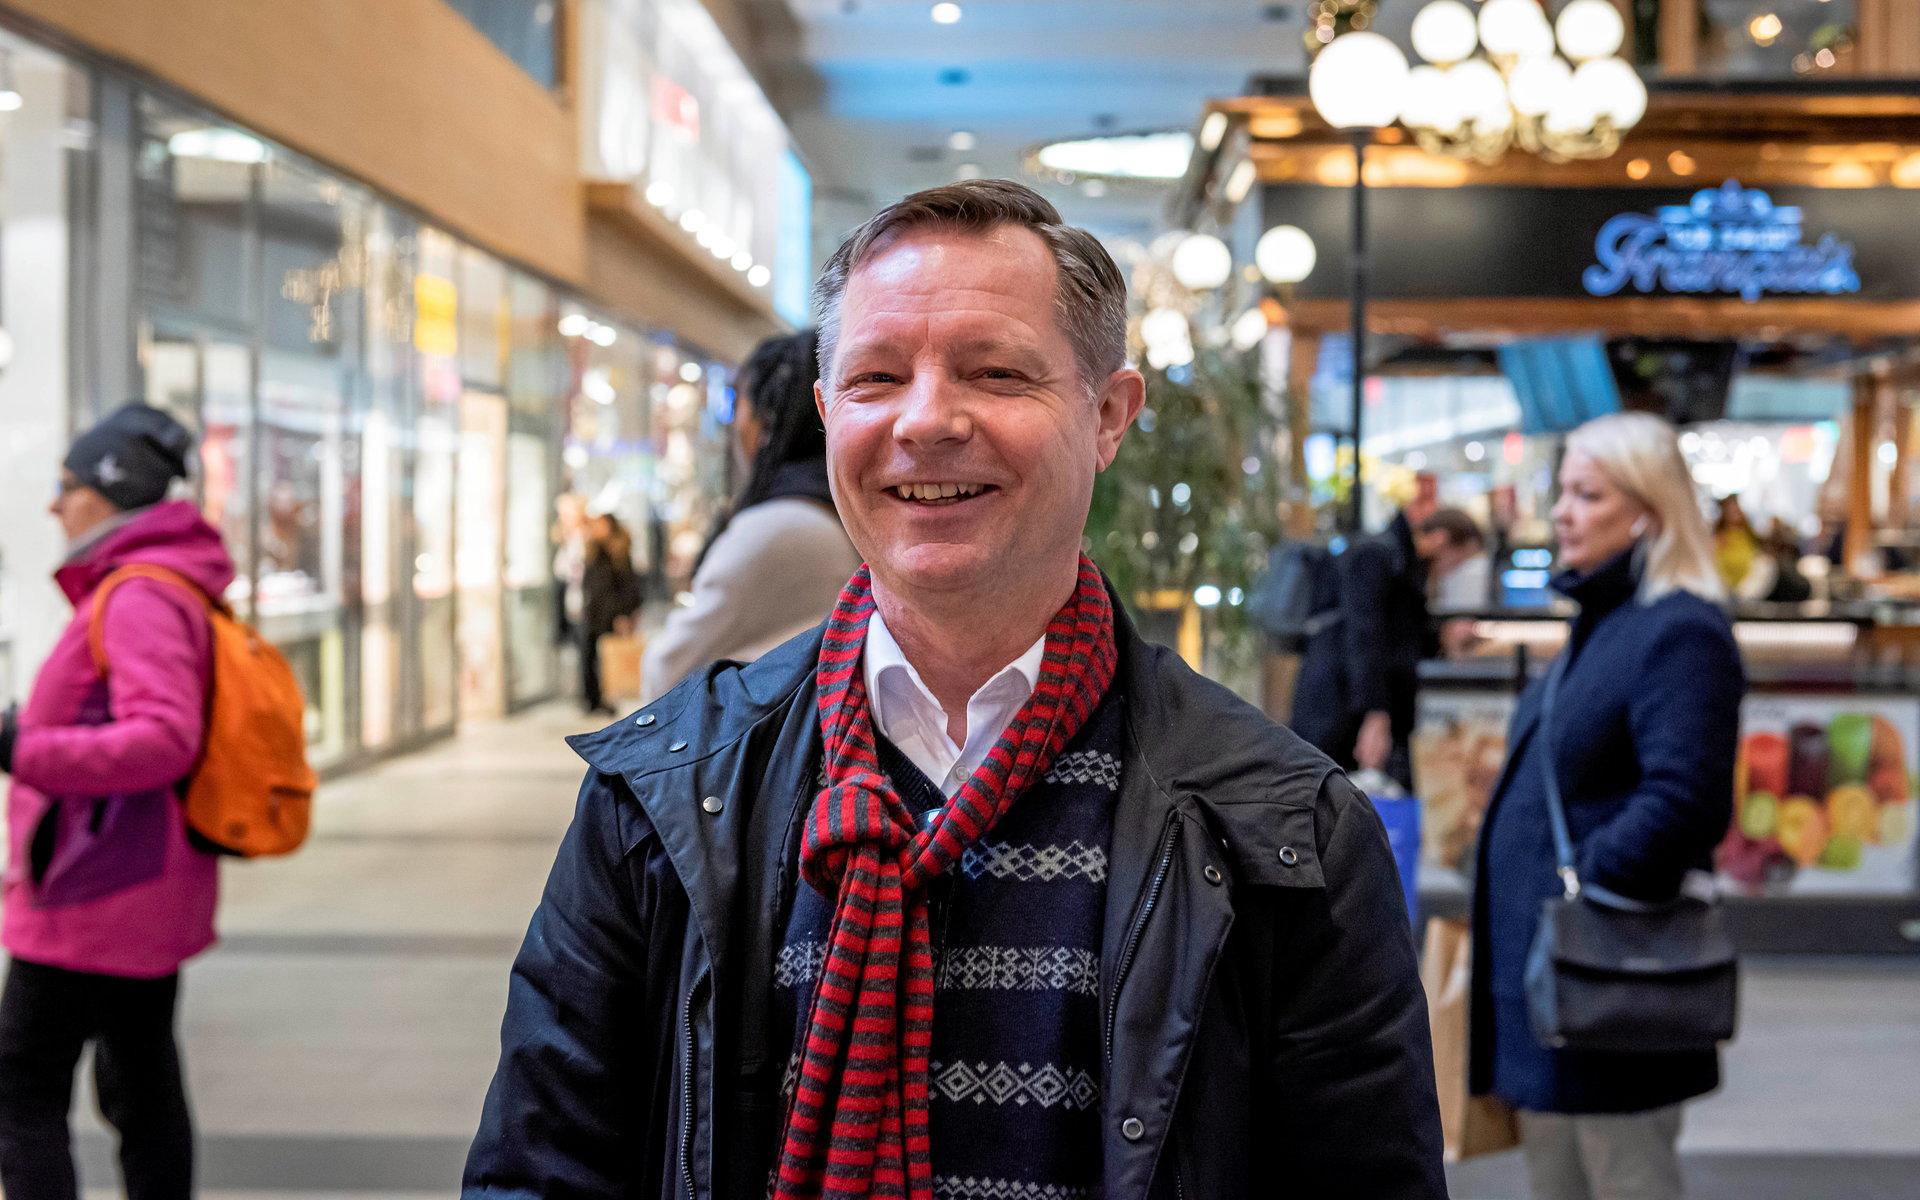 – Butikerna är duktiga på att se till att kunderna håller avstånd, säger Leif Persson, som var på jakt ett paket till sin frus julstrumpa under torsdagen.